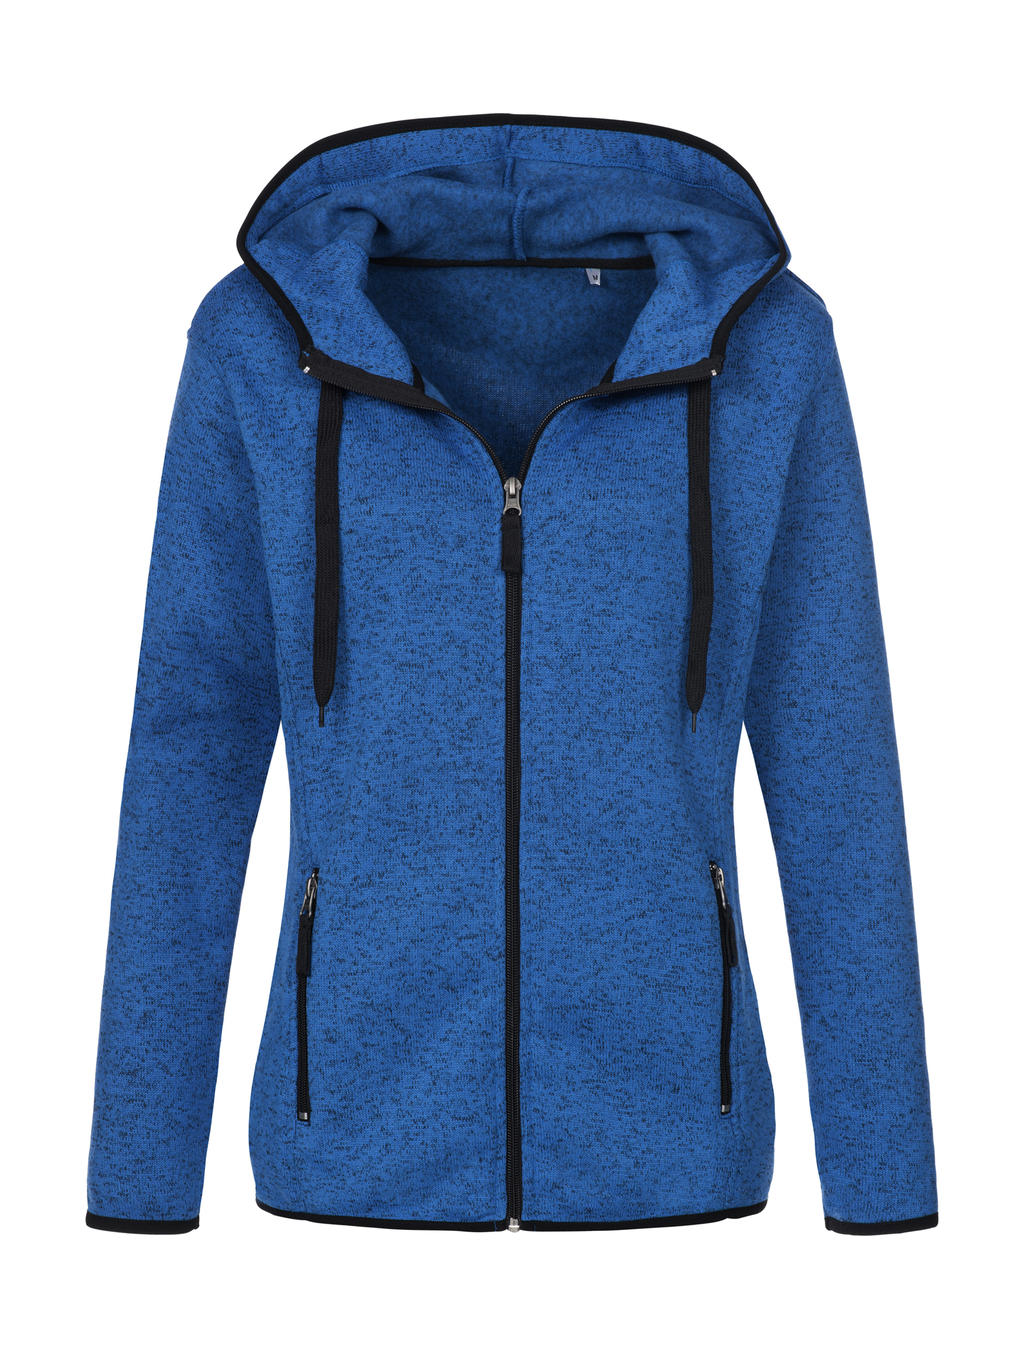  Knit Fleece Jacket Women in Farbe Blue Melange